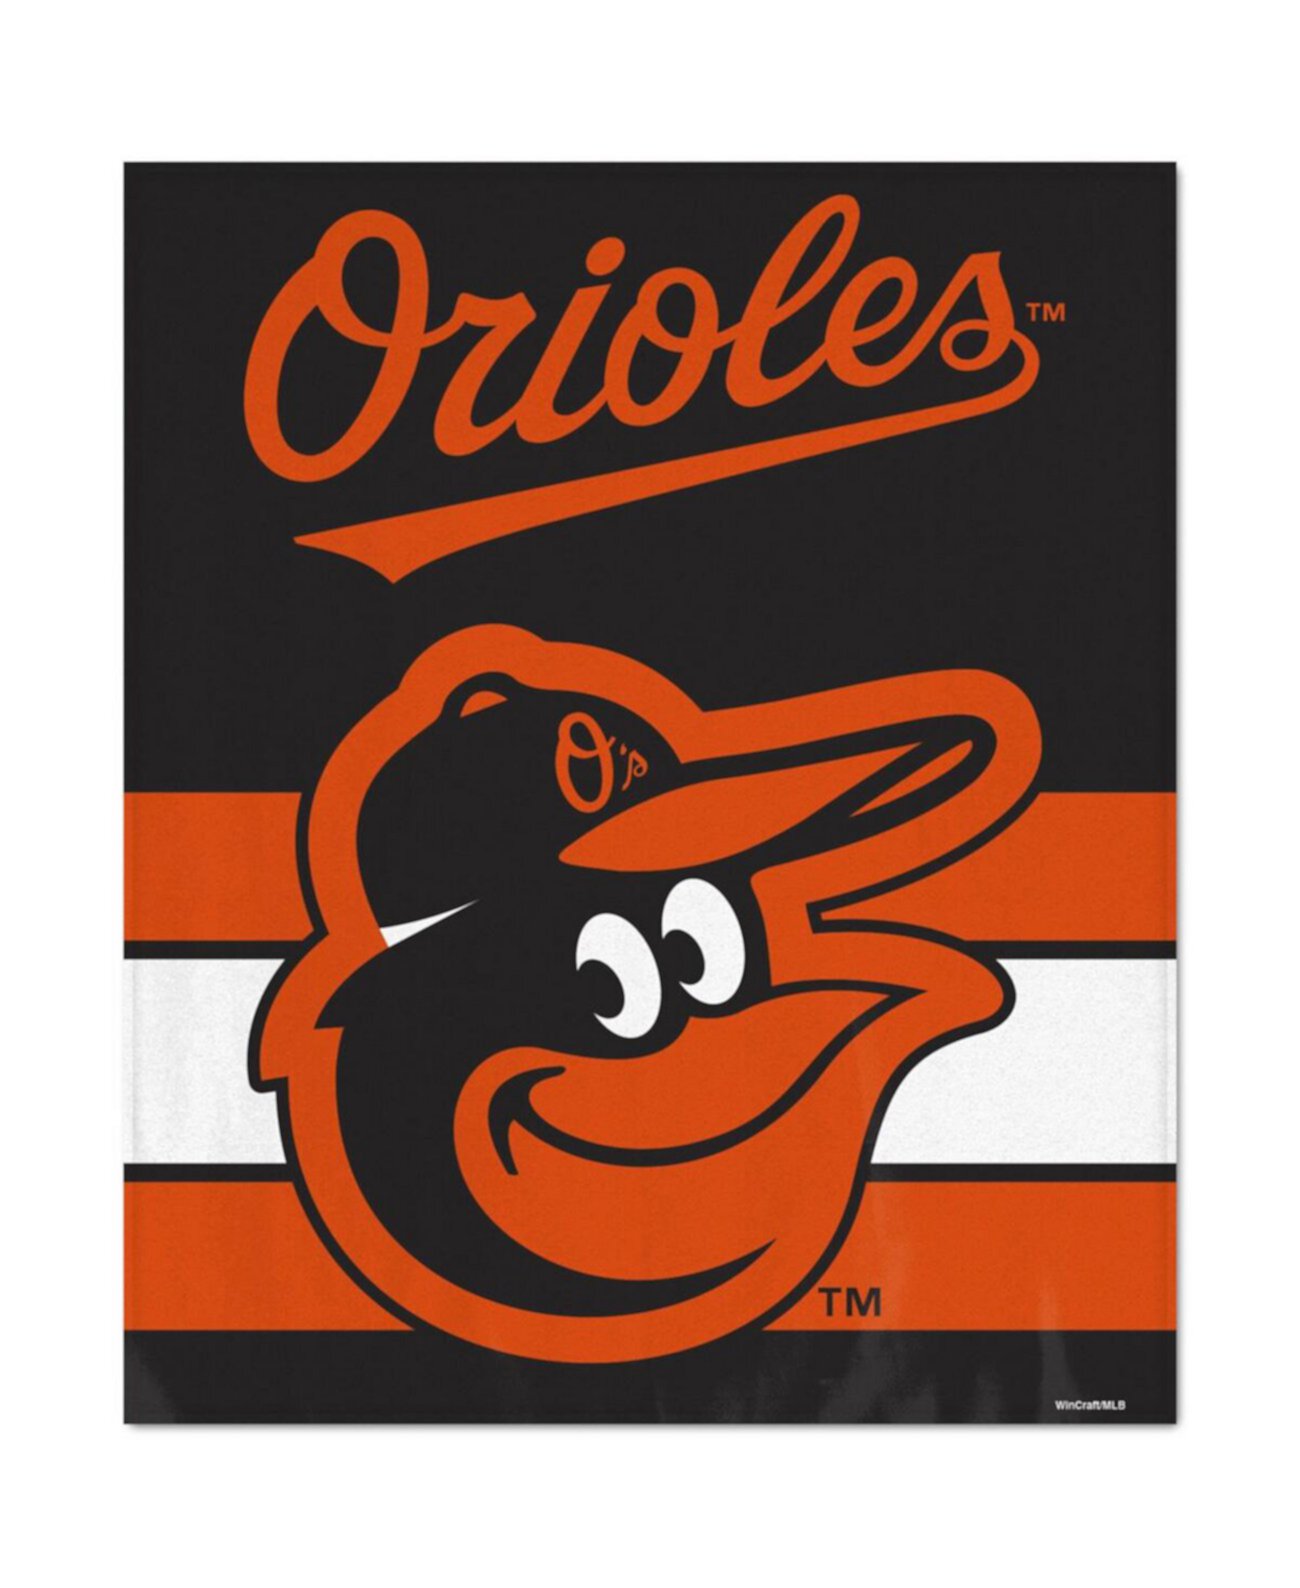 Ультраплюшевое покрывало Baltimore Orioles размером 50 x 60 дюймов Wincraft